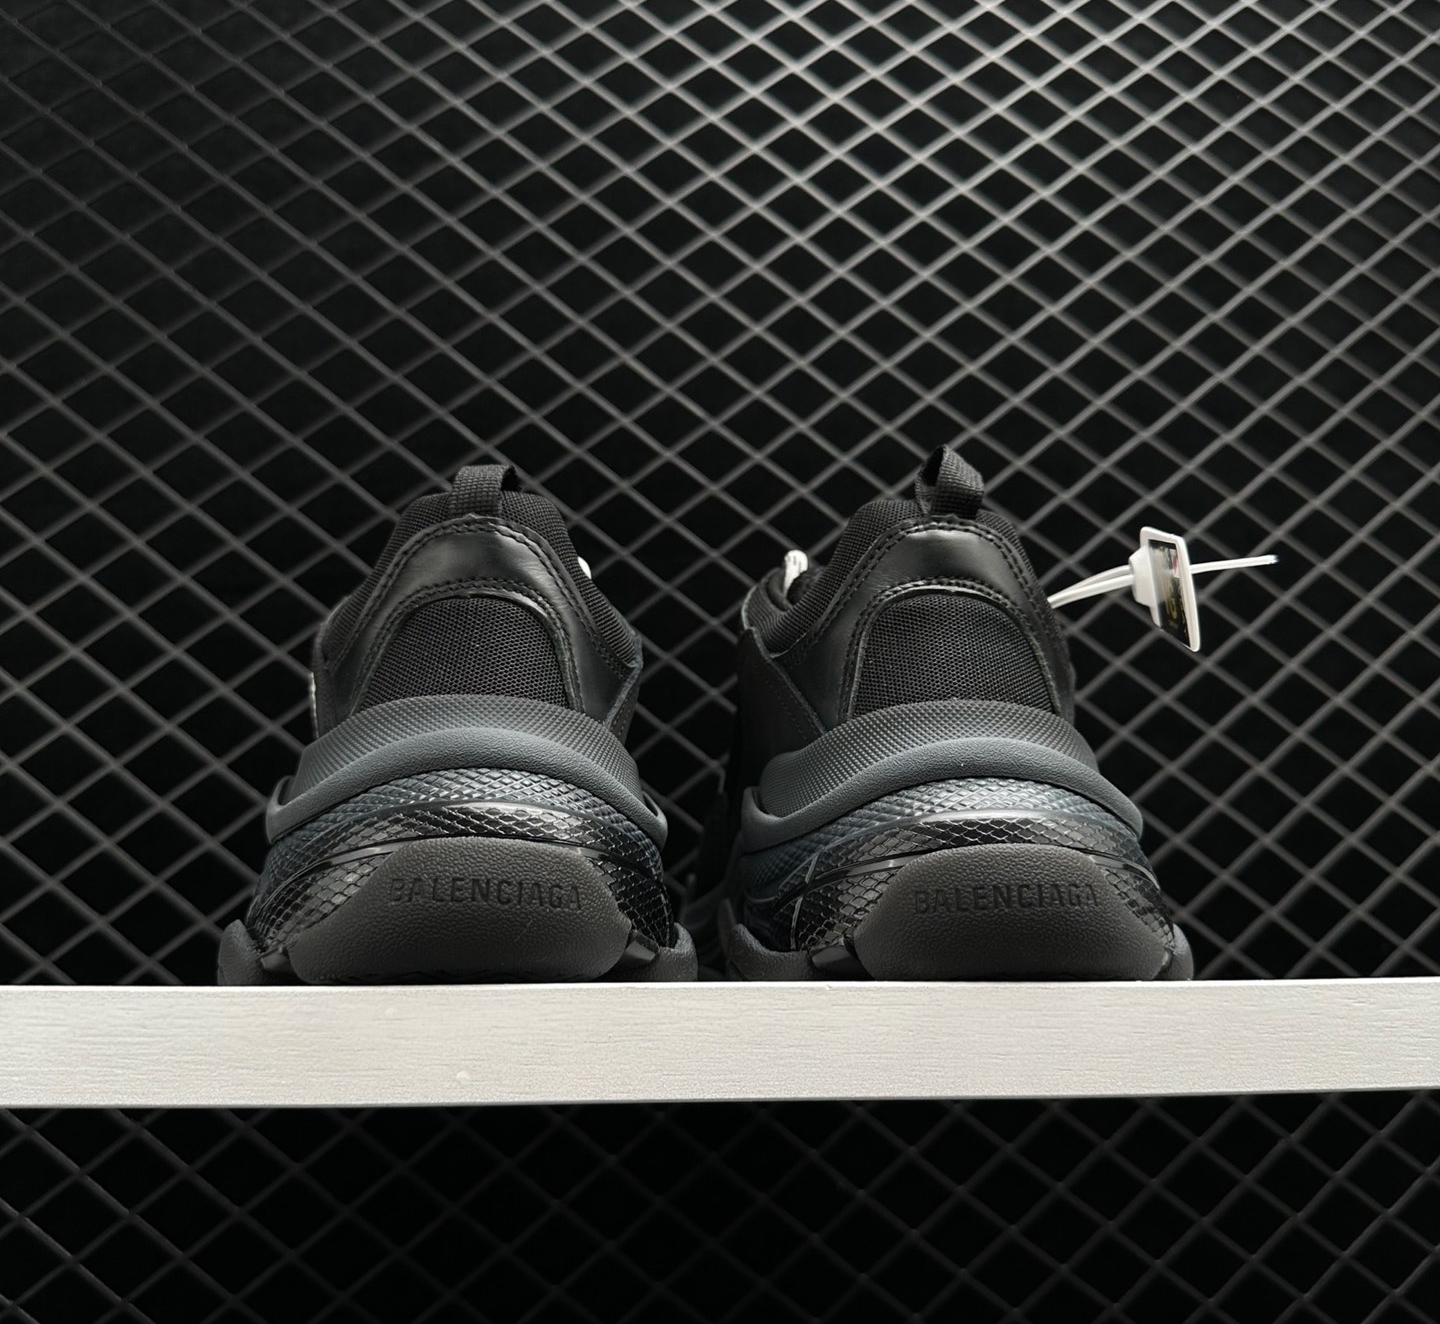 Balenciaga Triple S Clear Sole Black 541624 W09O1 1000 - Stylish, High-Quality Footwear